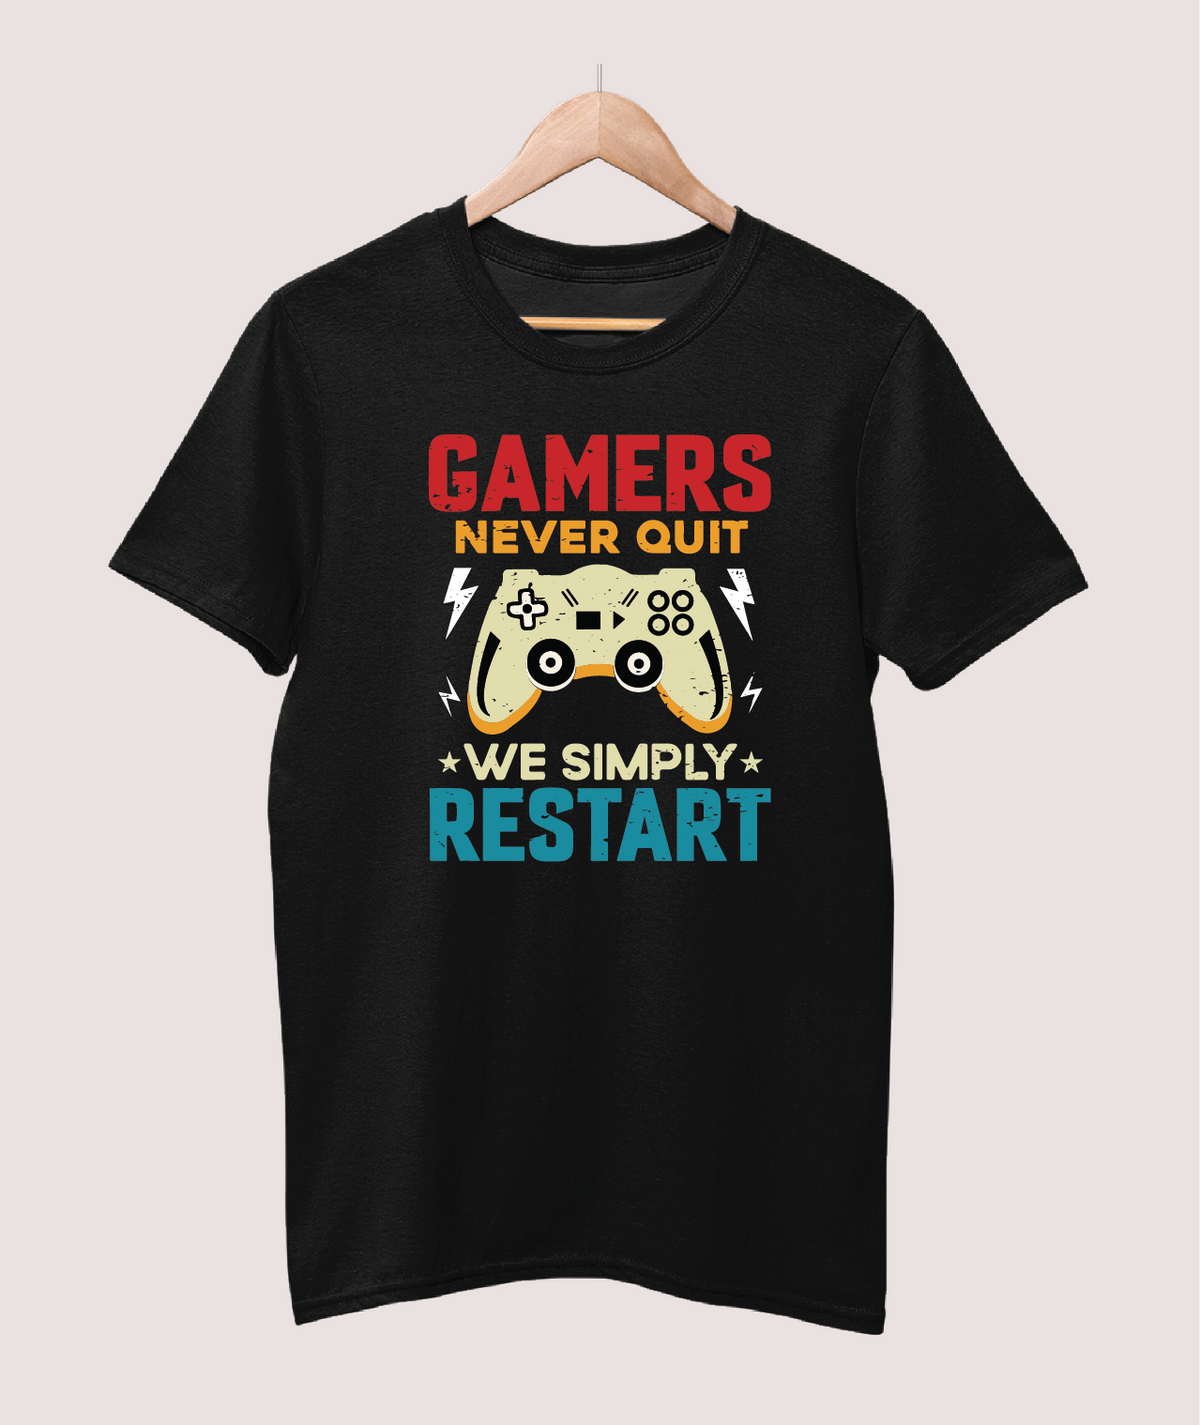 Gamer's restart gaming T-shirt